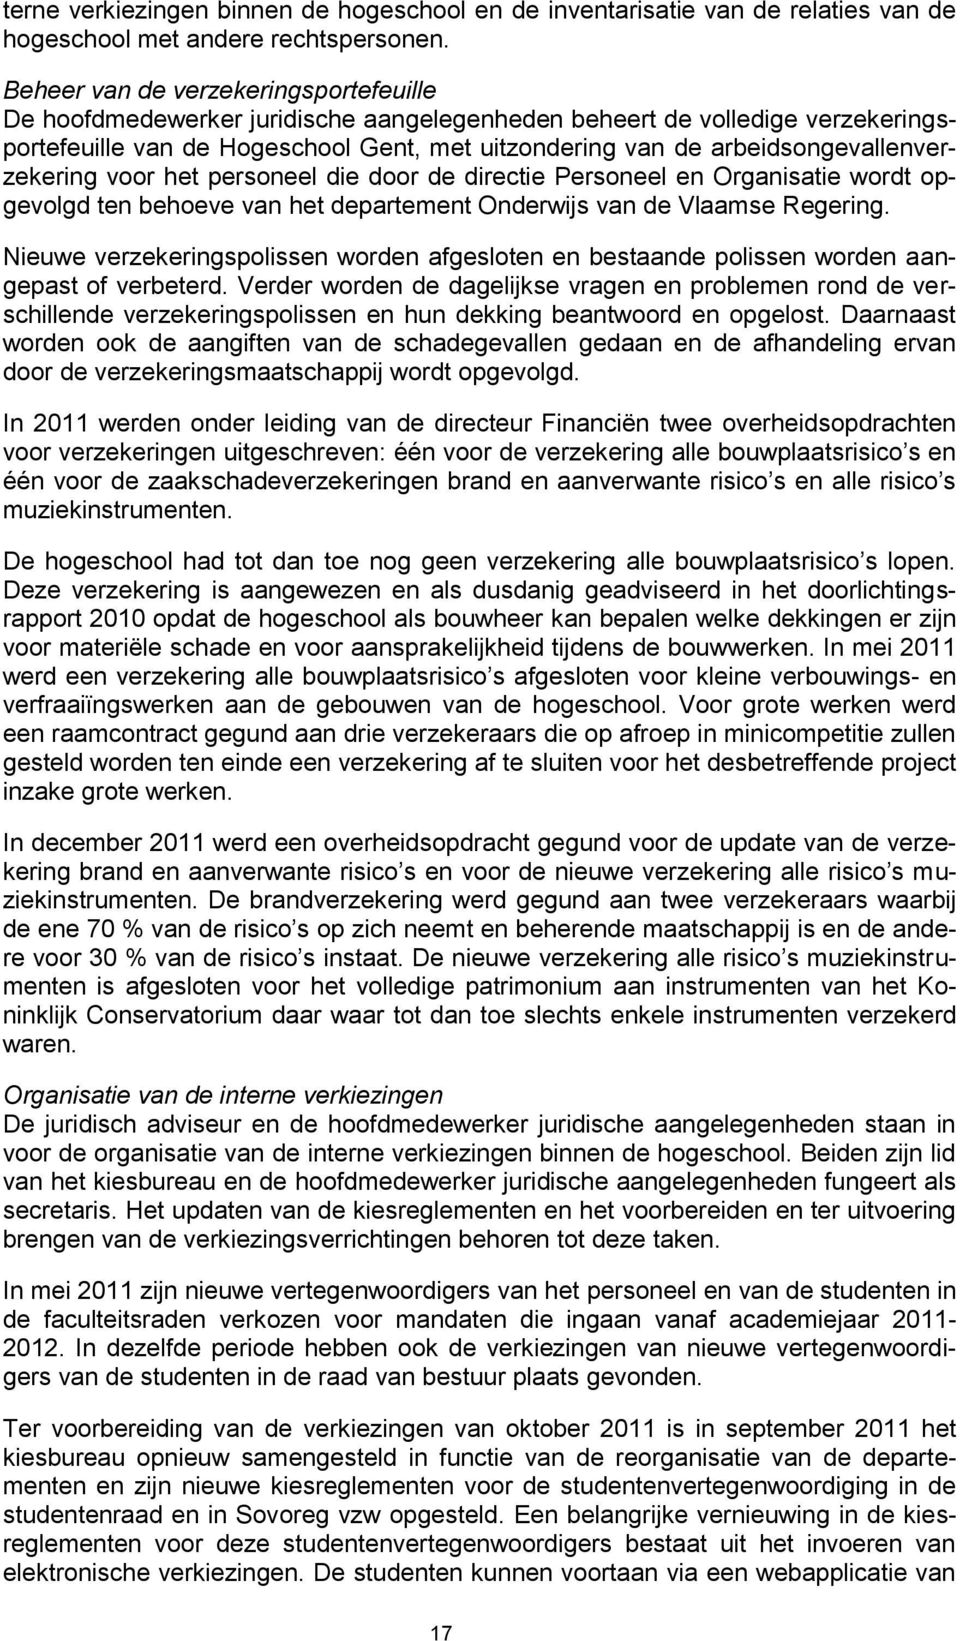 arbeidsongevallenverzekering voor het personeel die door de directie Personeel en Organisatie wordt opgevolgd ten behoeve van het departement Onderwijs van de Vlaamse Regering.